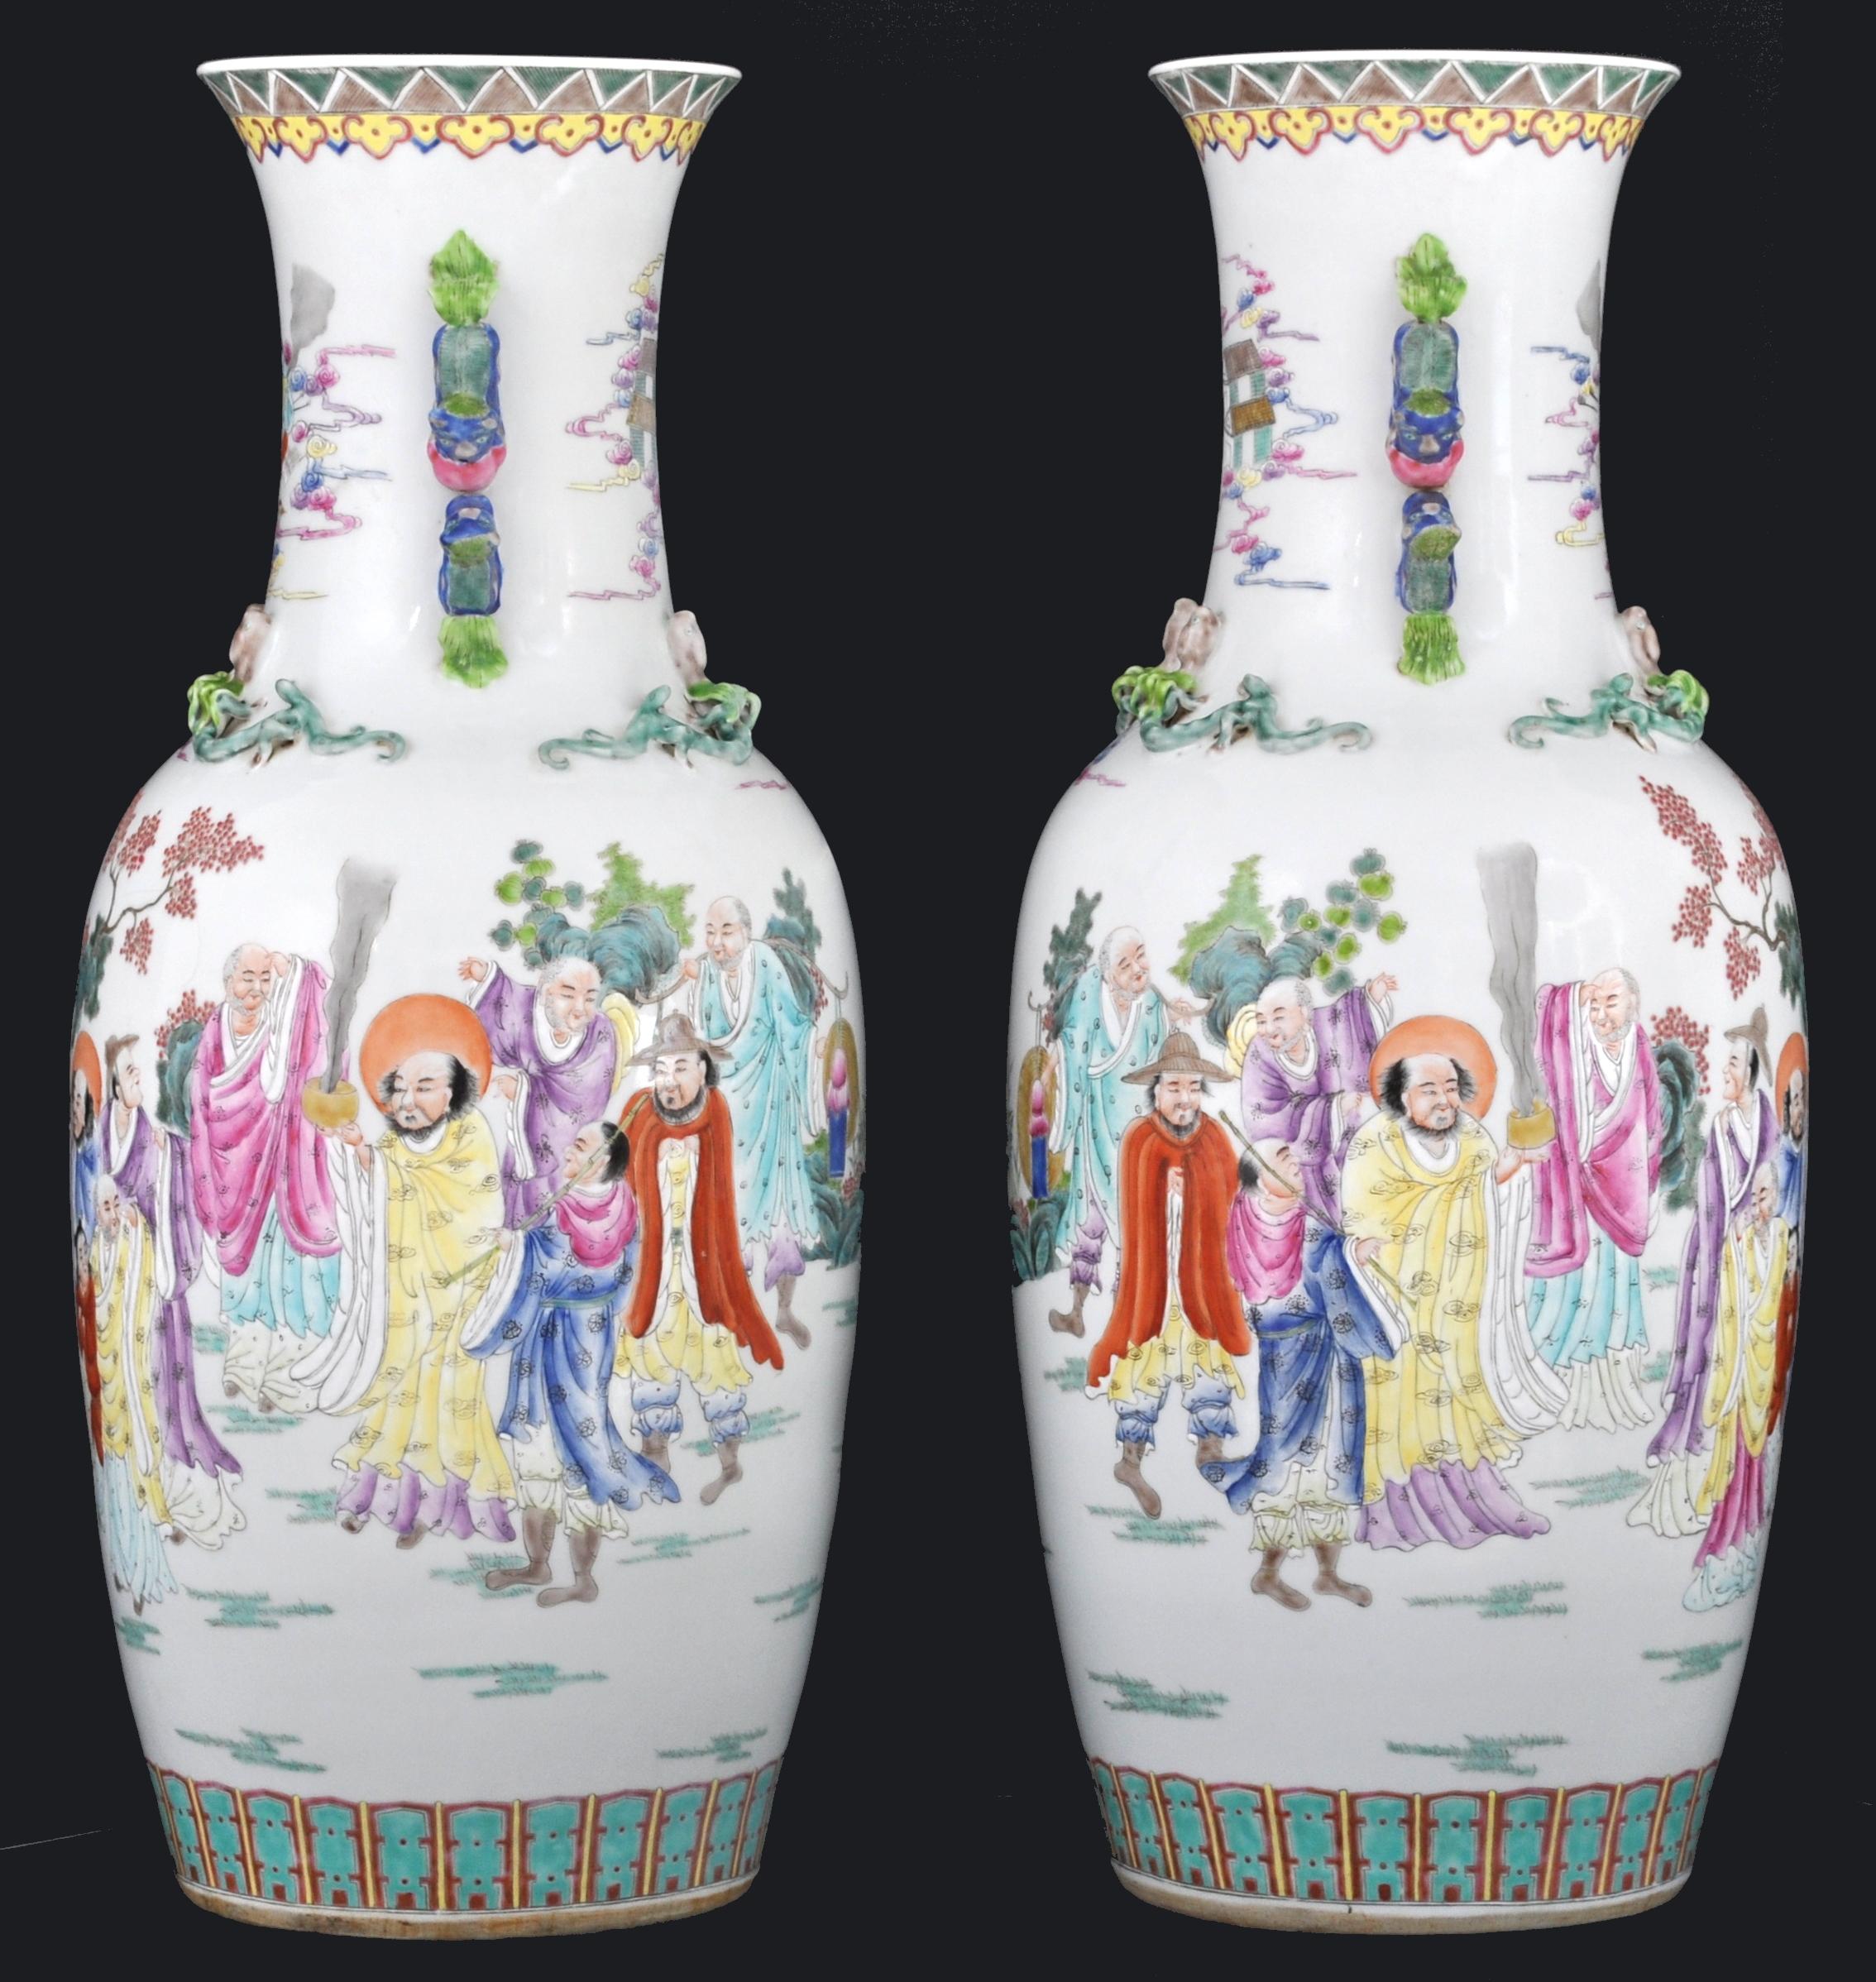 Paire monumentale de vases en porcelaine de famille rose de la fin de la période Qing au début de la période républicaine. Les vases sont de forme balustre avec des poignées appliquées représentant des dragons, chaque vase présentant une scène